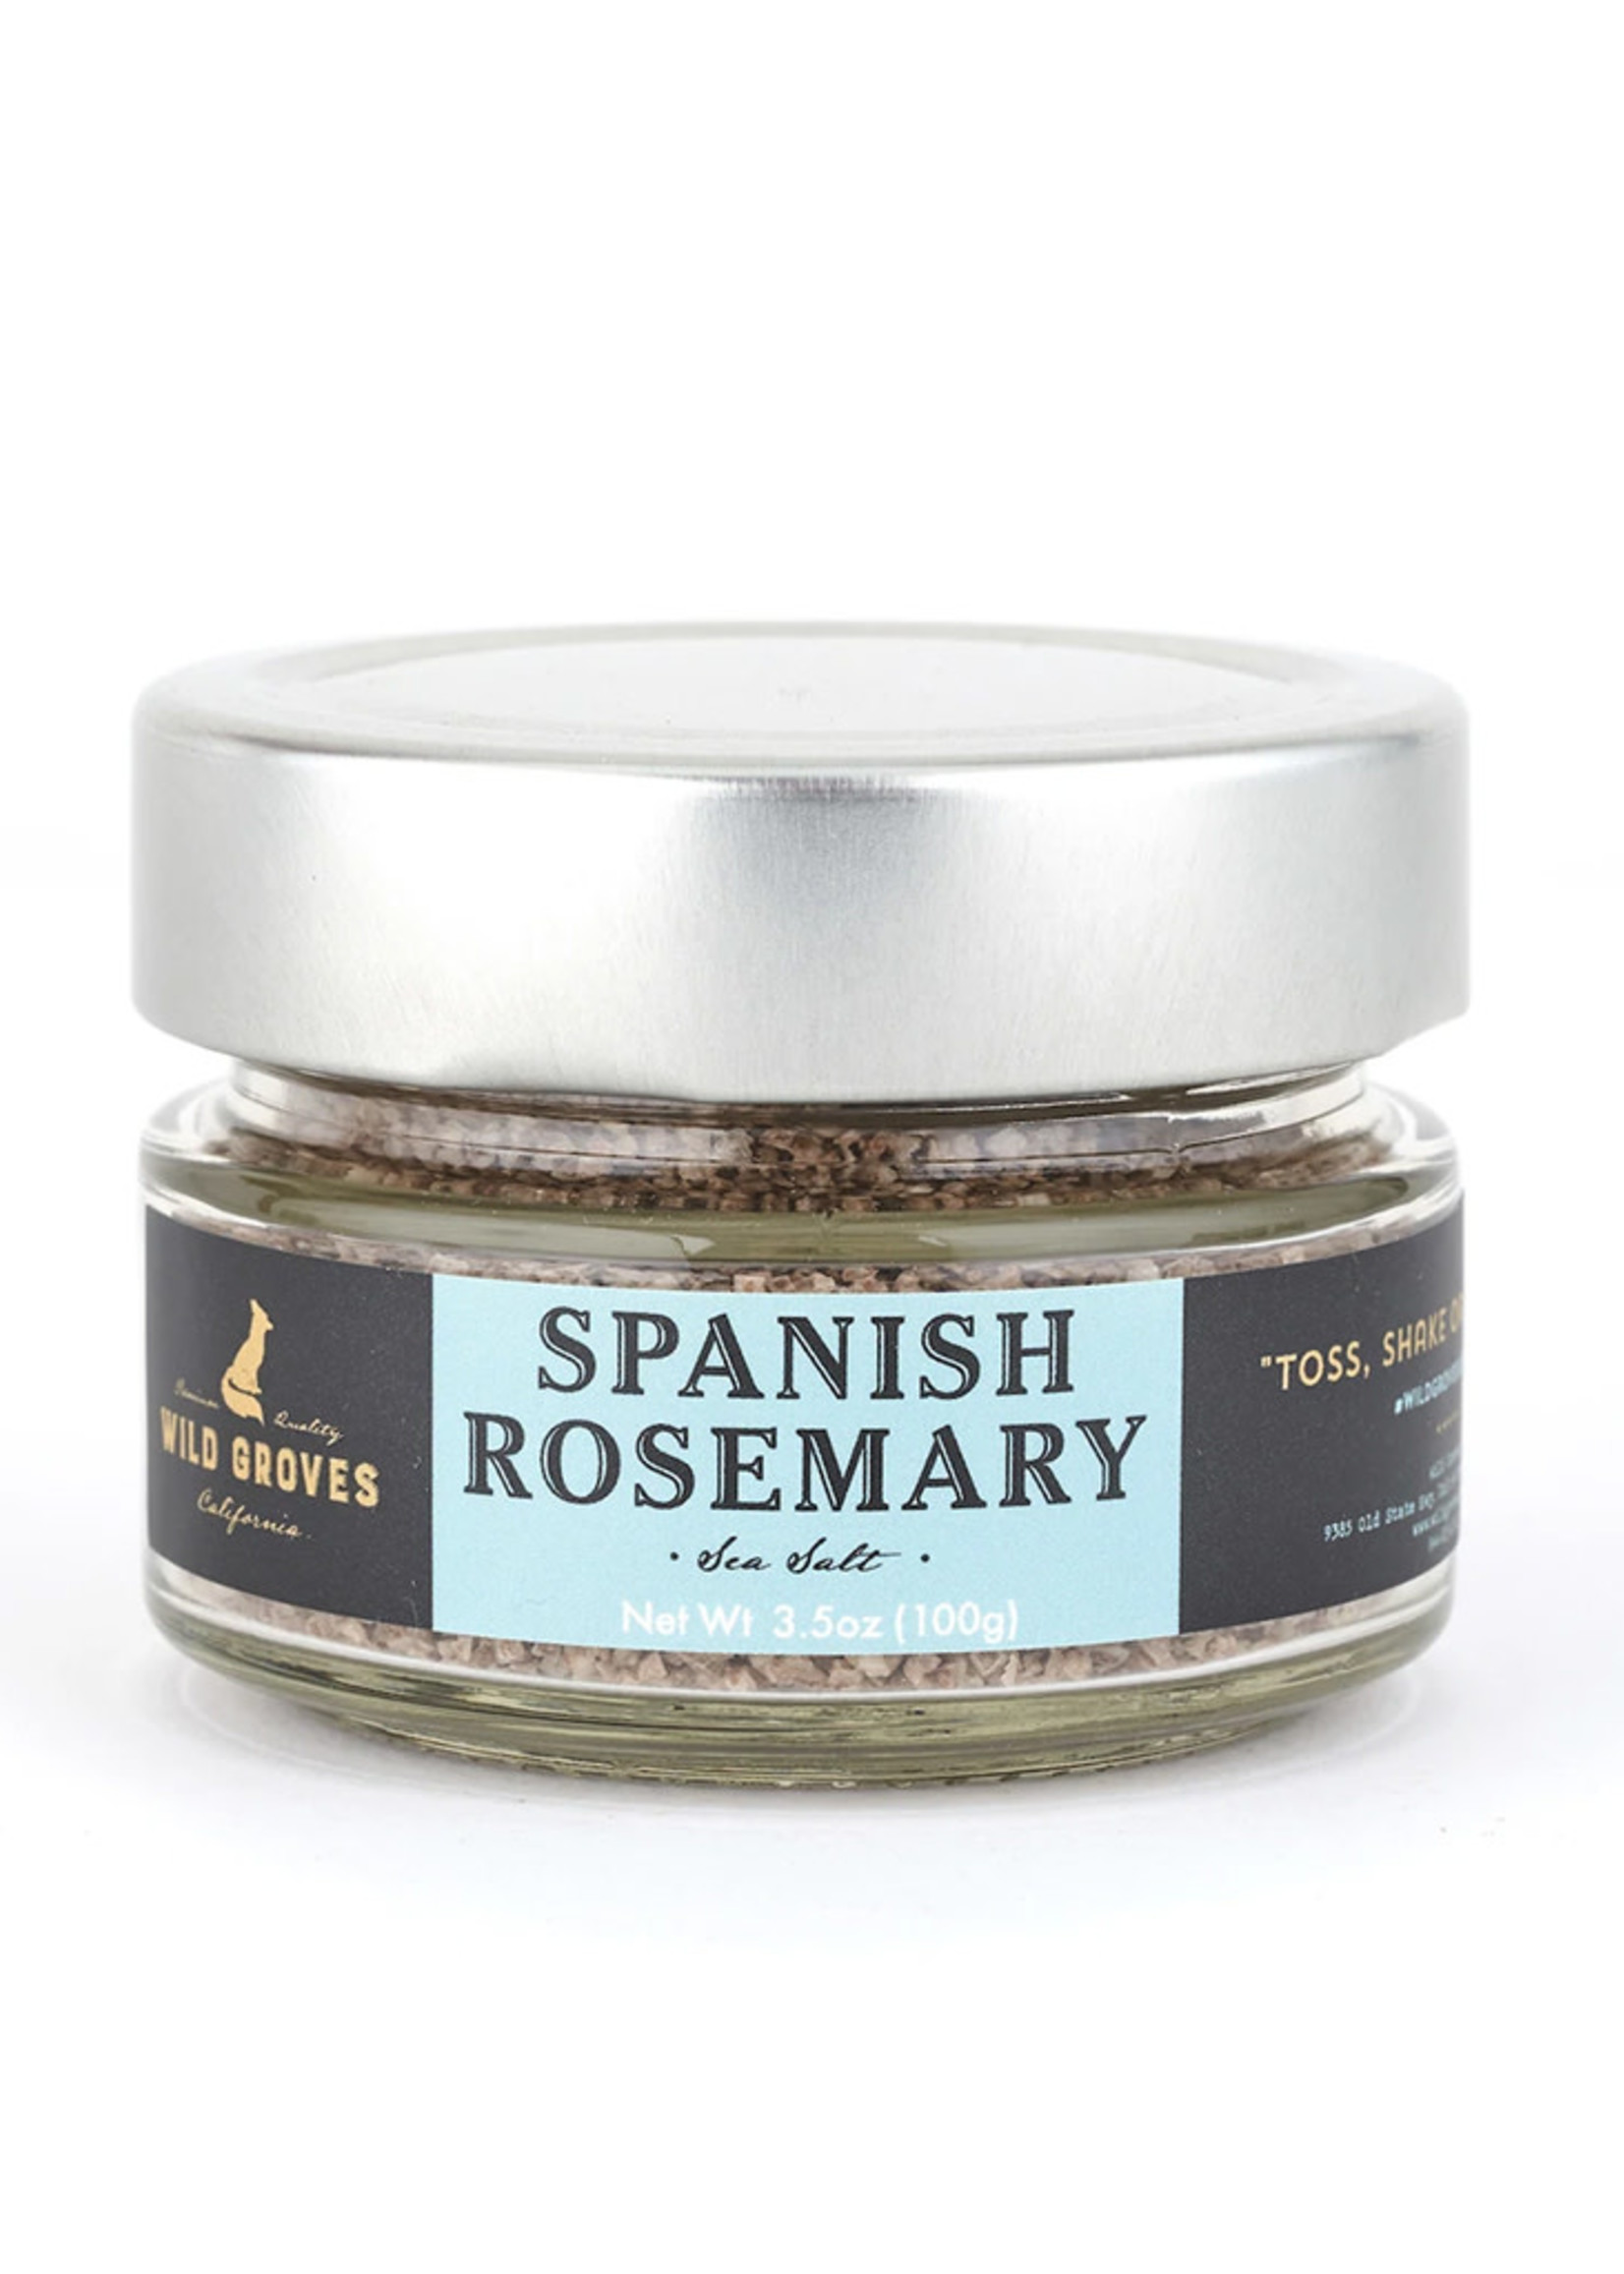 Wild Groves Rosemary Sea Salt | Wild Groves Brand | 3.5 oz